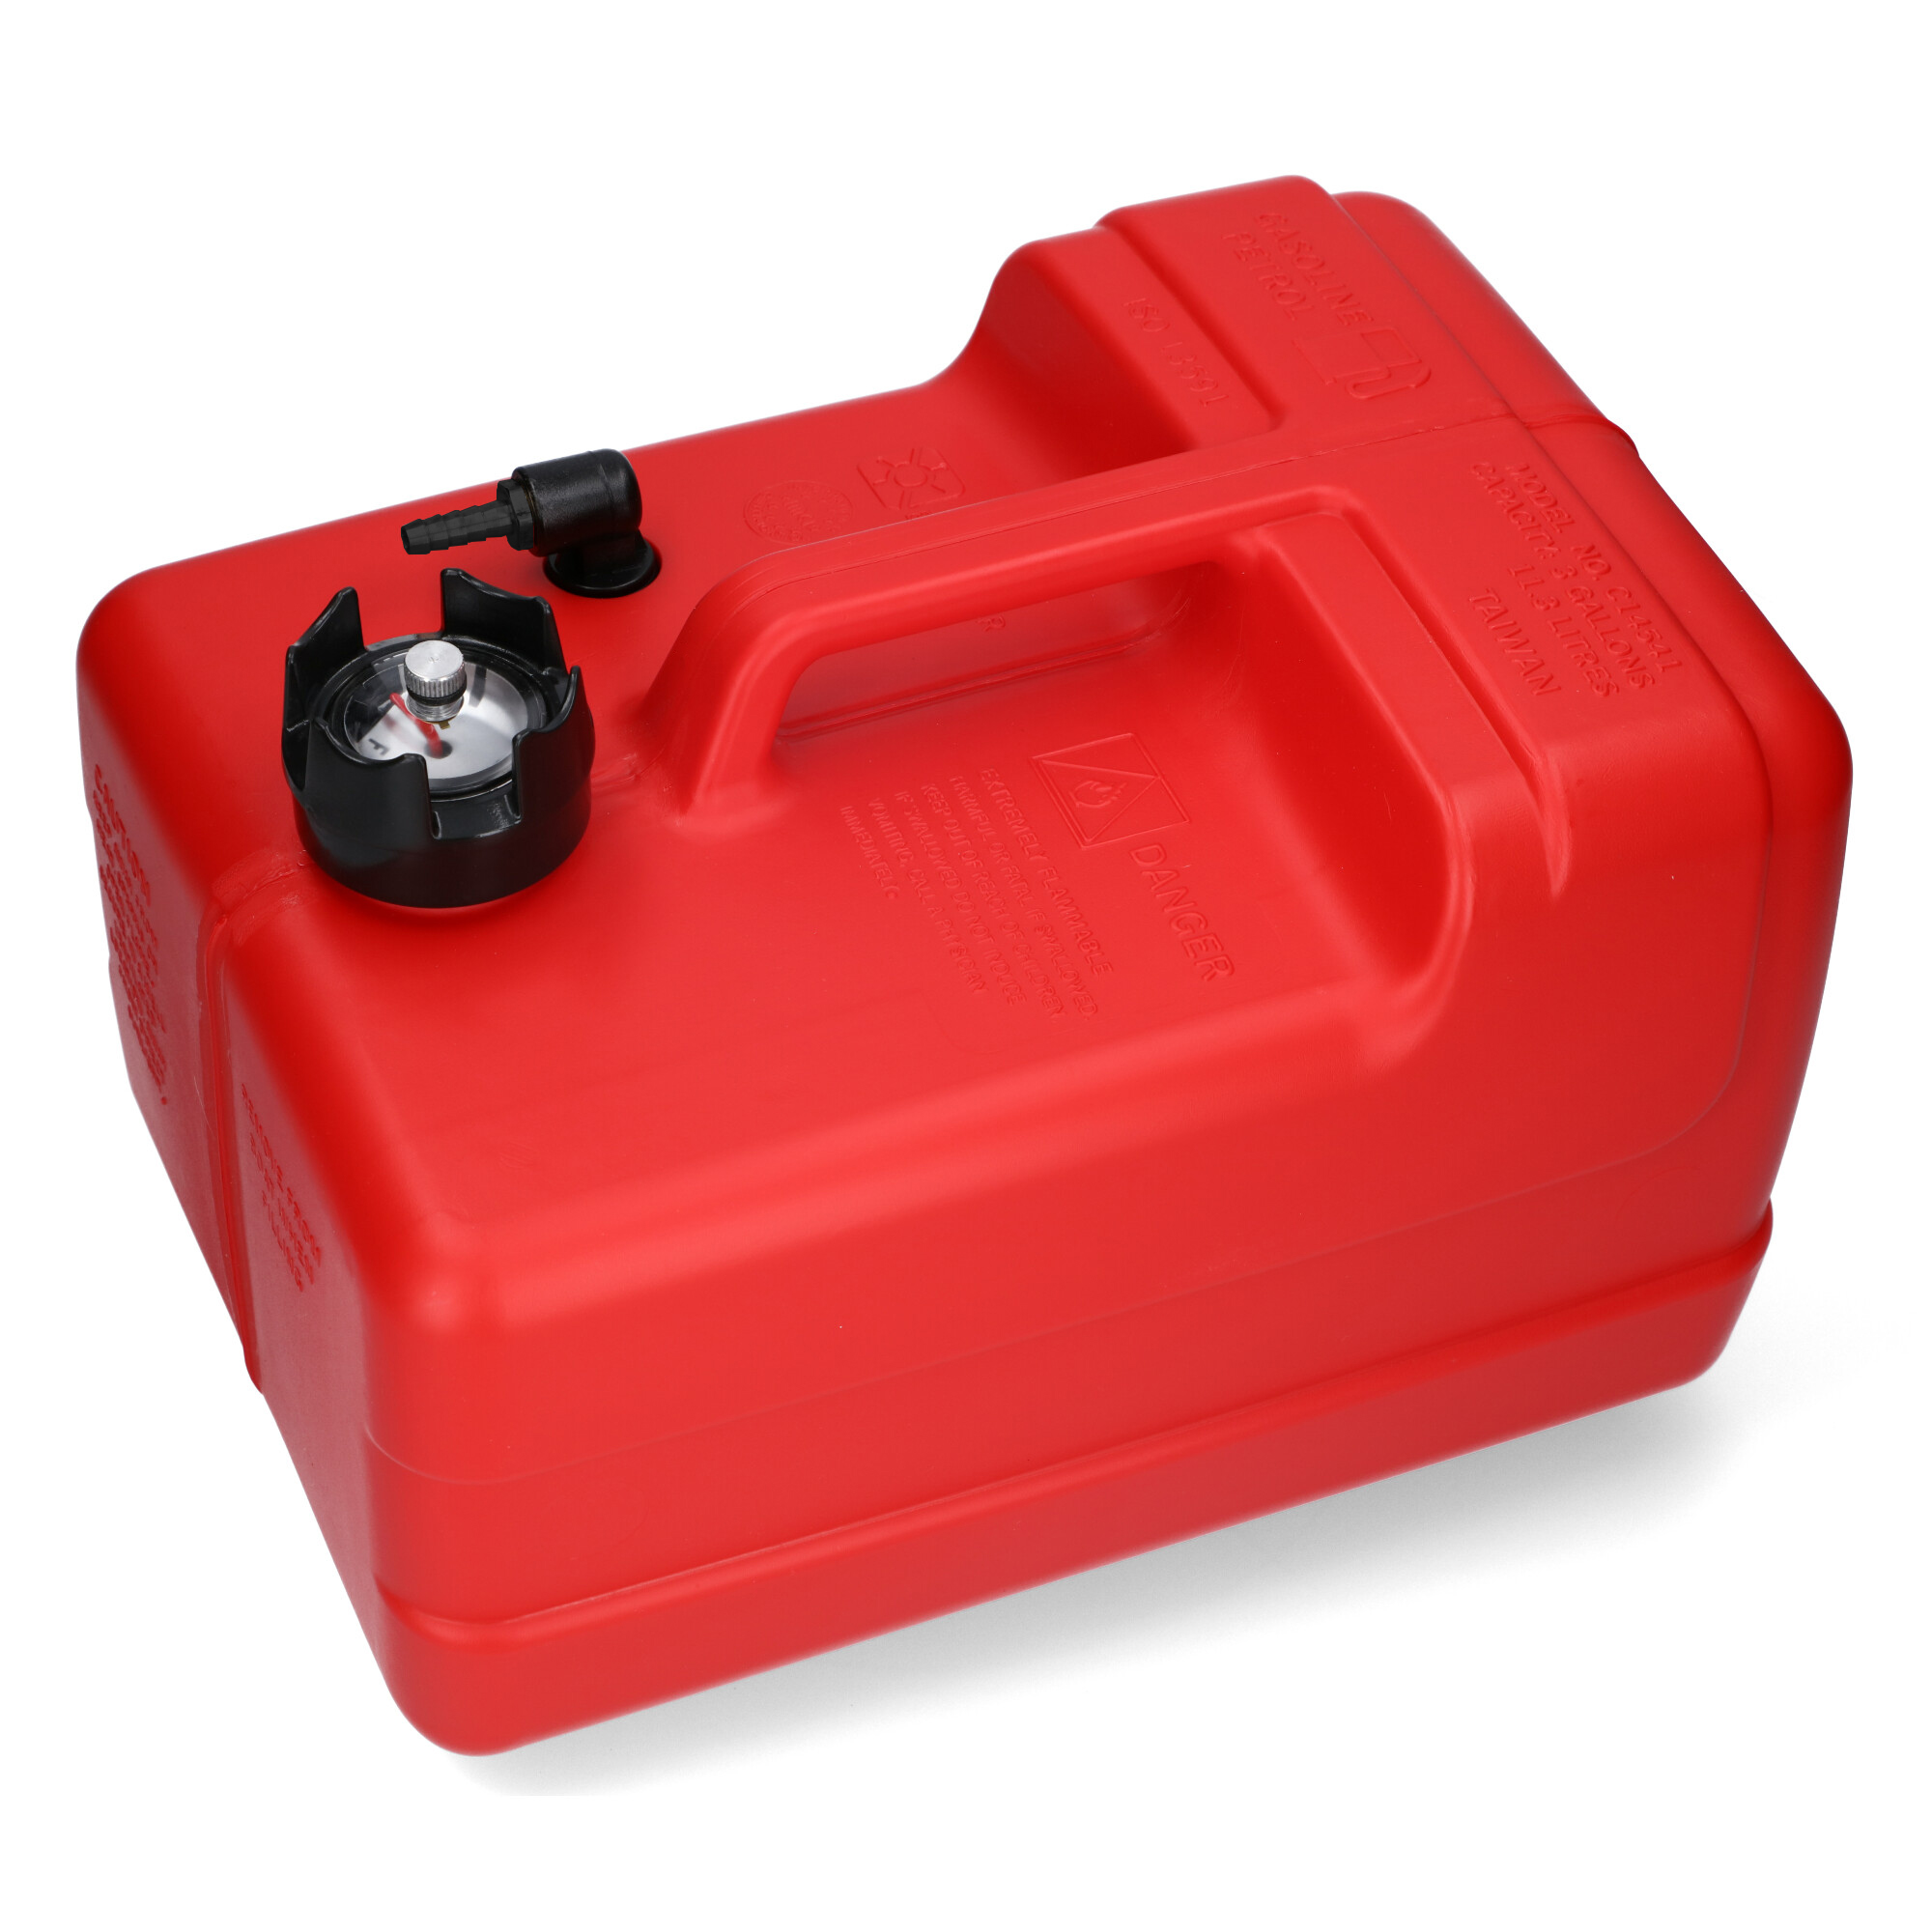 Kraftstofftank rot / Anschlussnippel (8mm) / Füllstandsanzeige manuell (22  Liter)